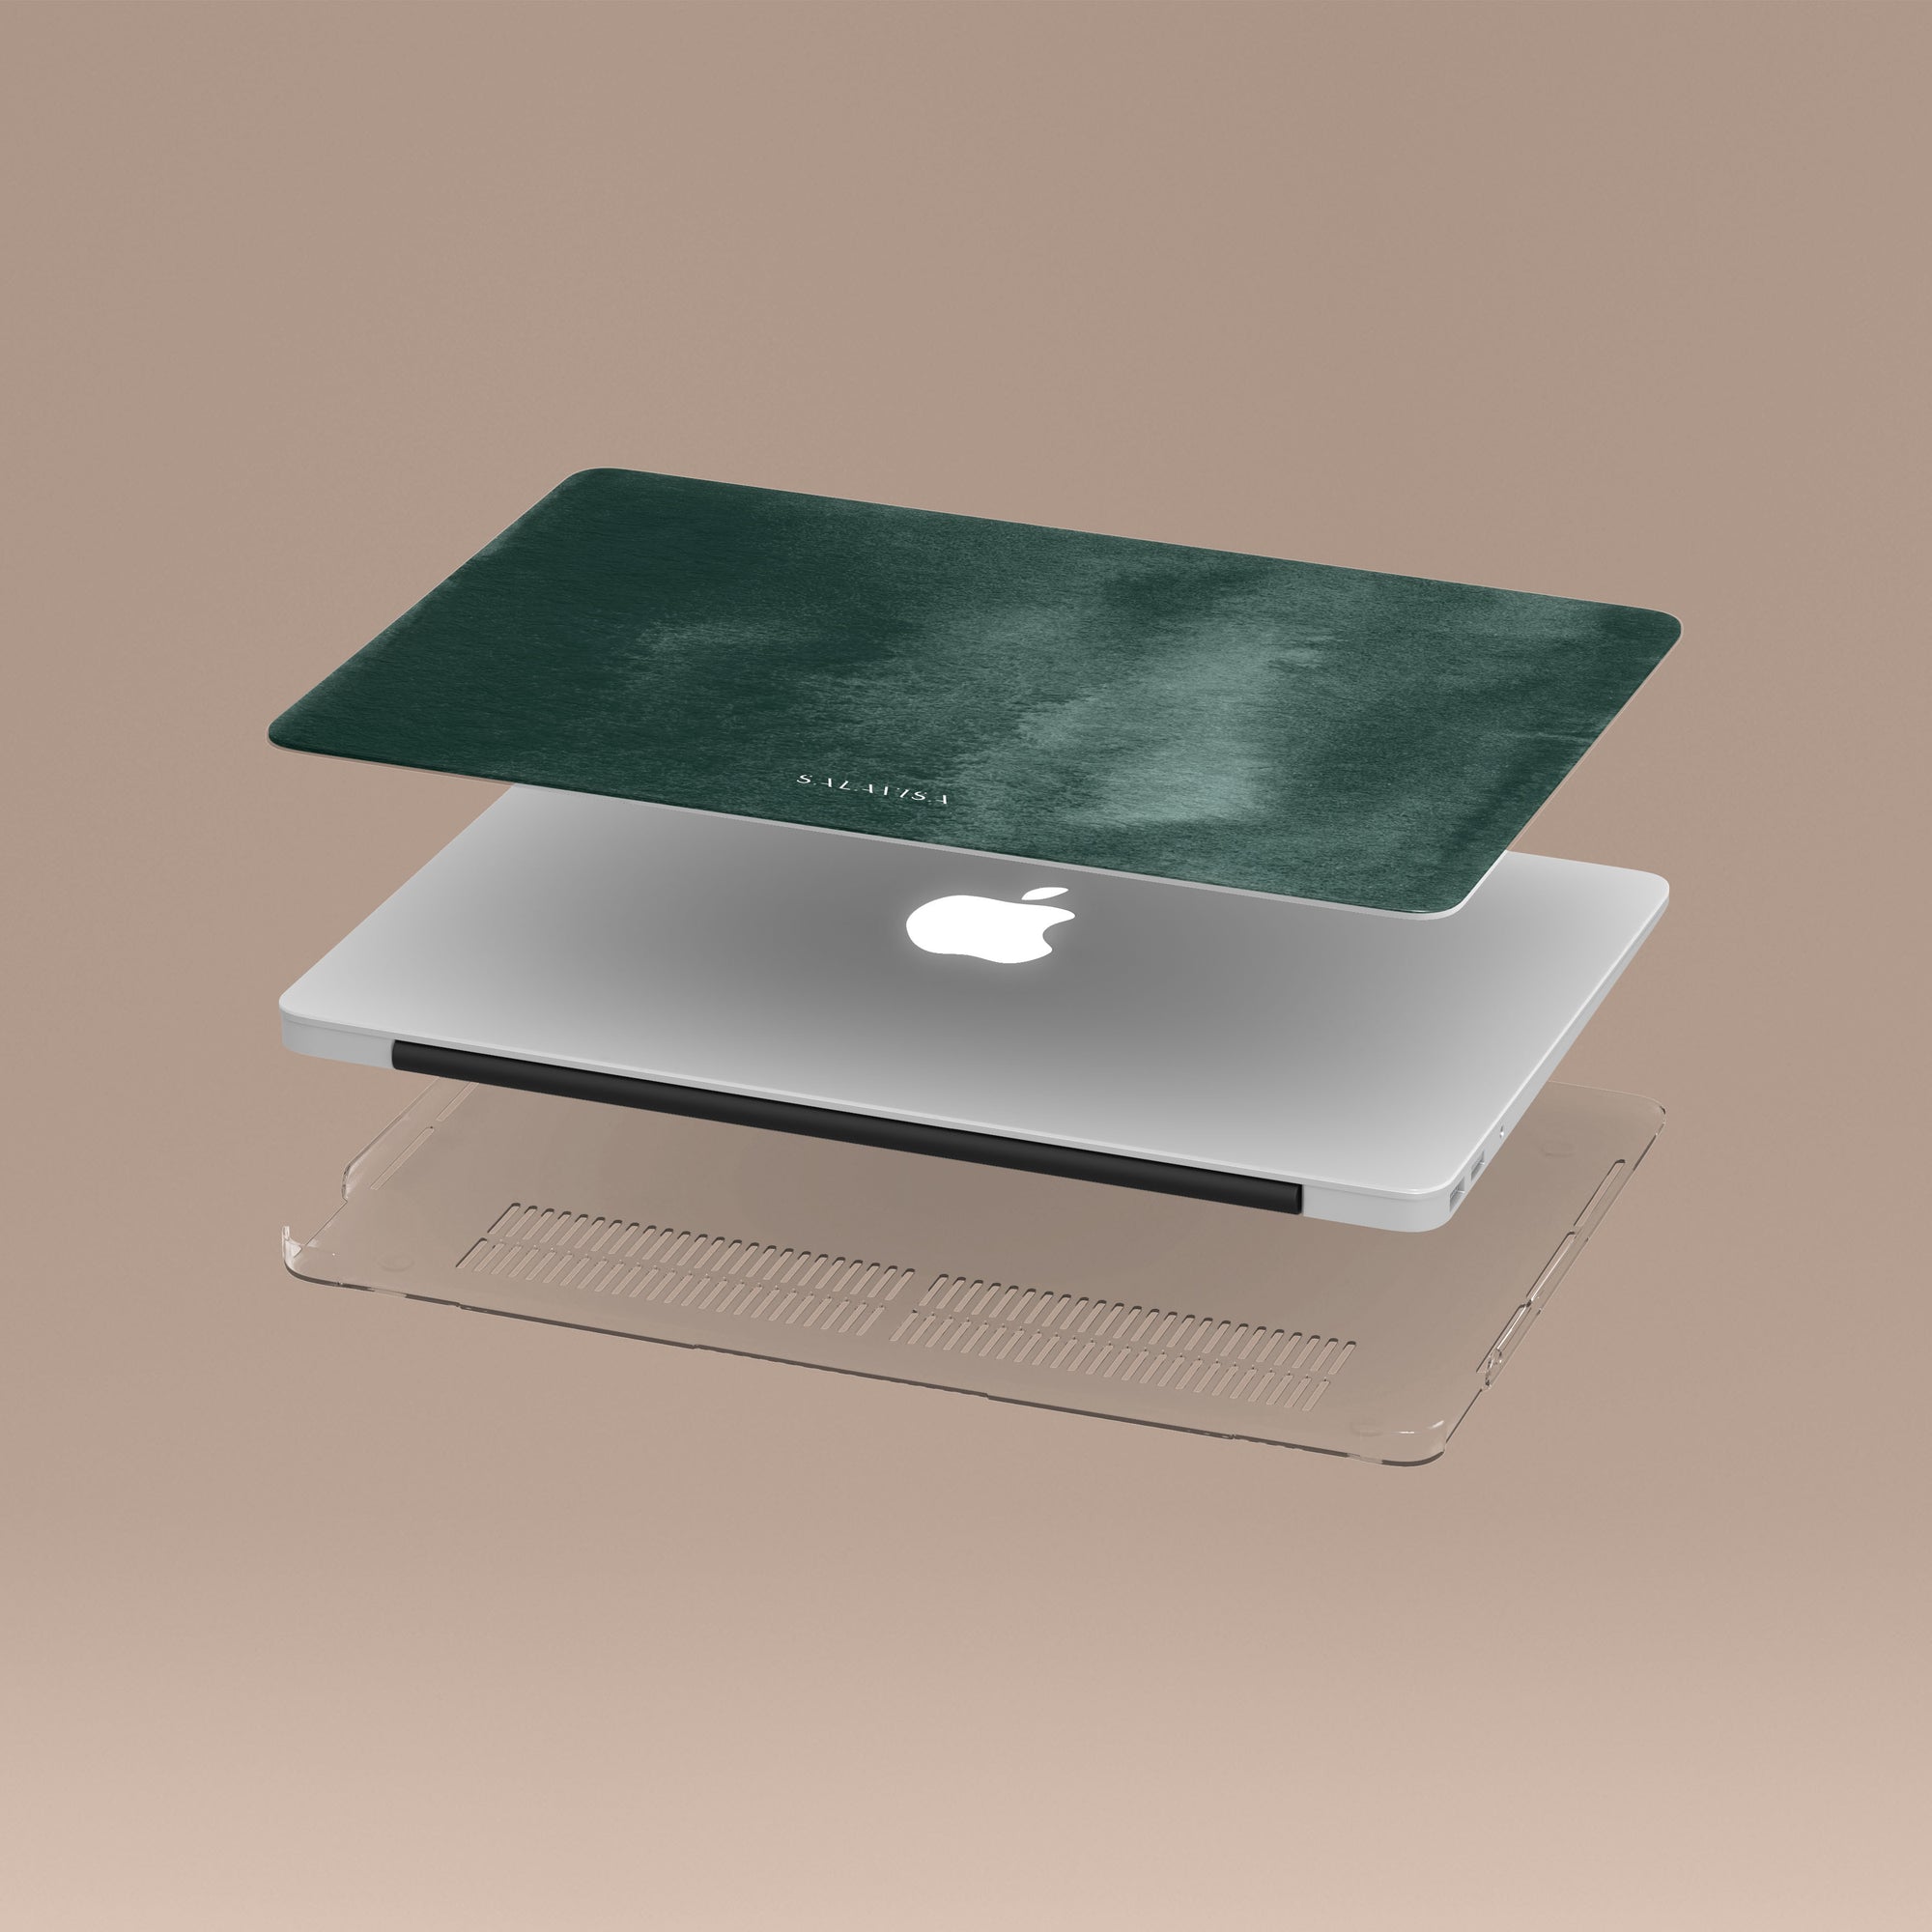 Forest Green Watercolor MacBook Case MacBook Cases - SALAVISA